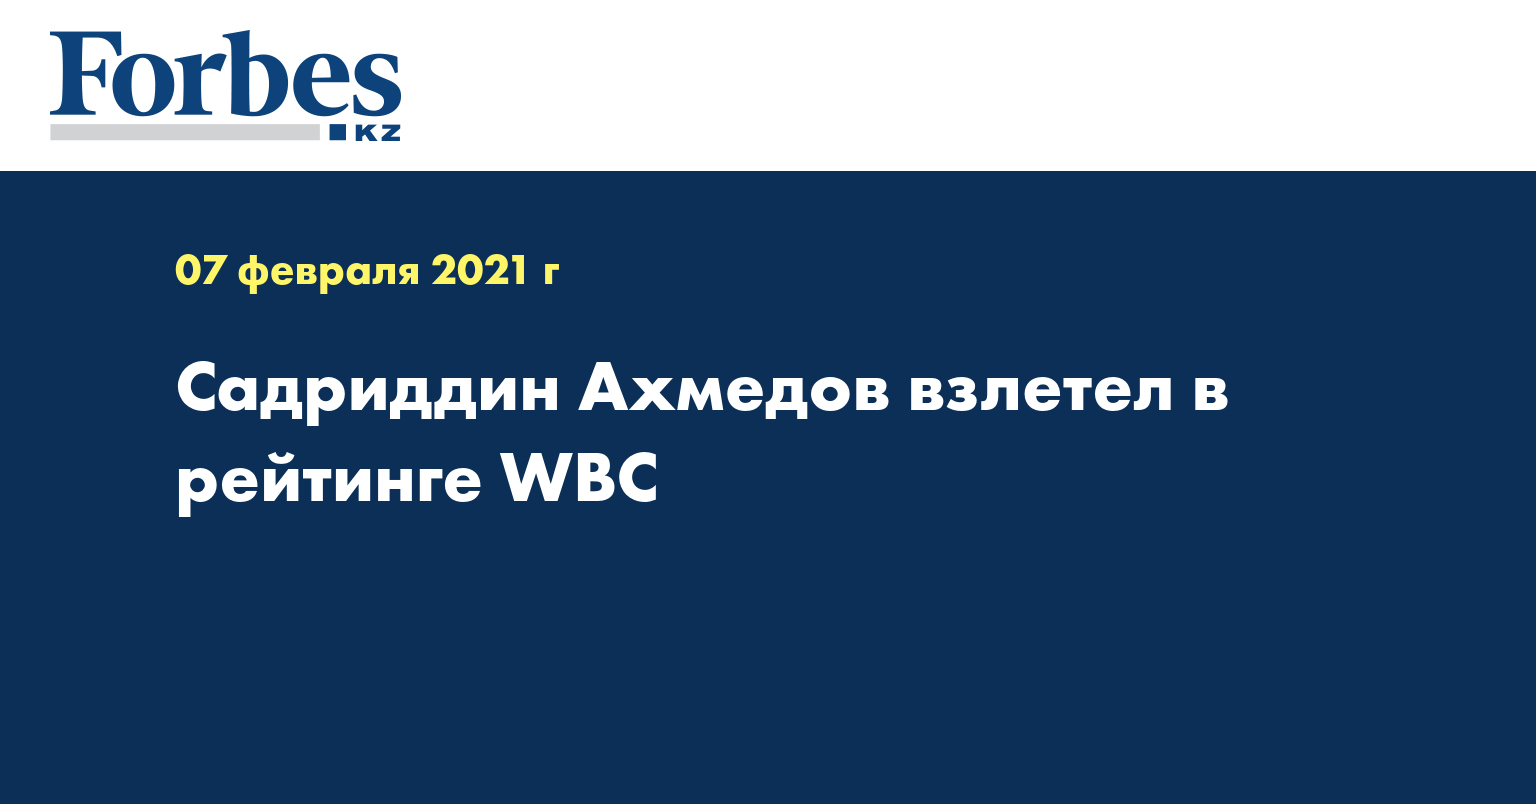 Садриддин Ахмедов взлетел в рейтинге WBC